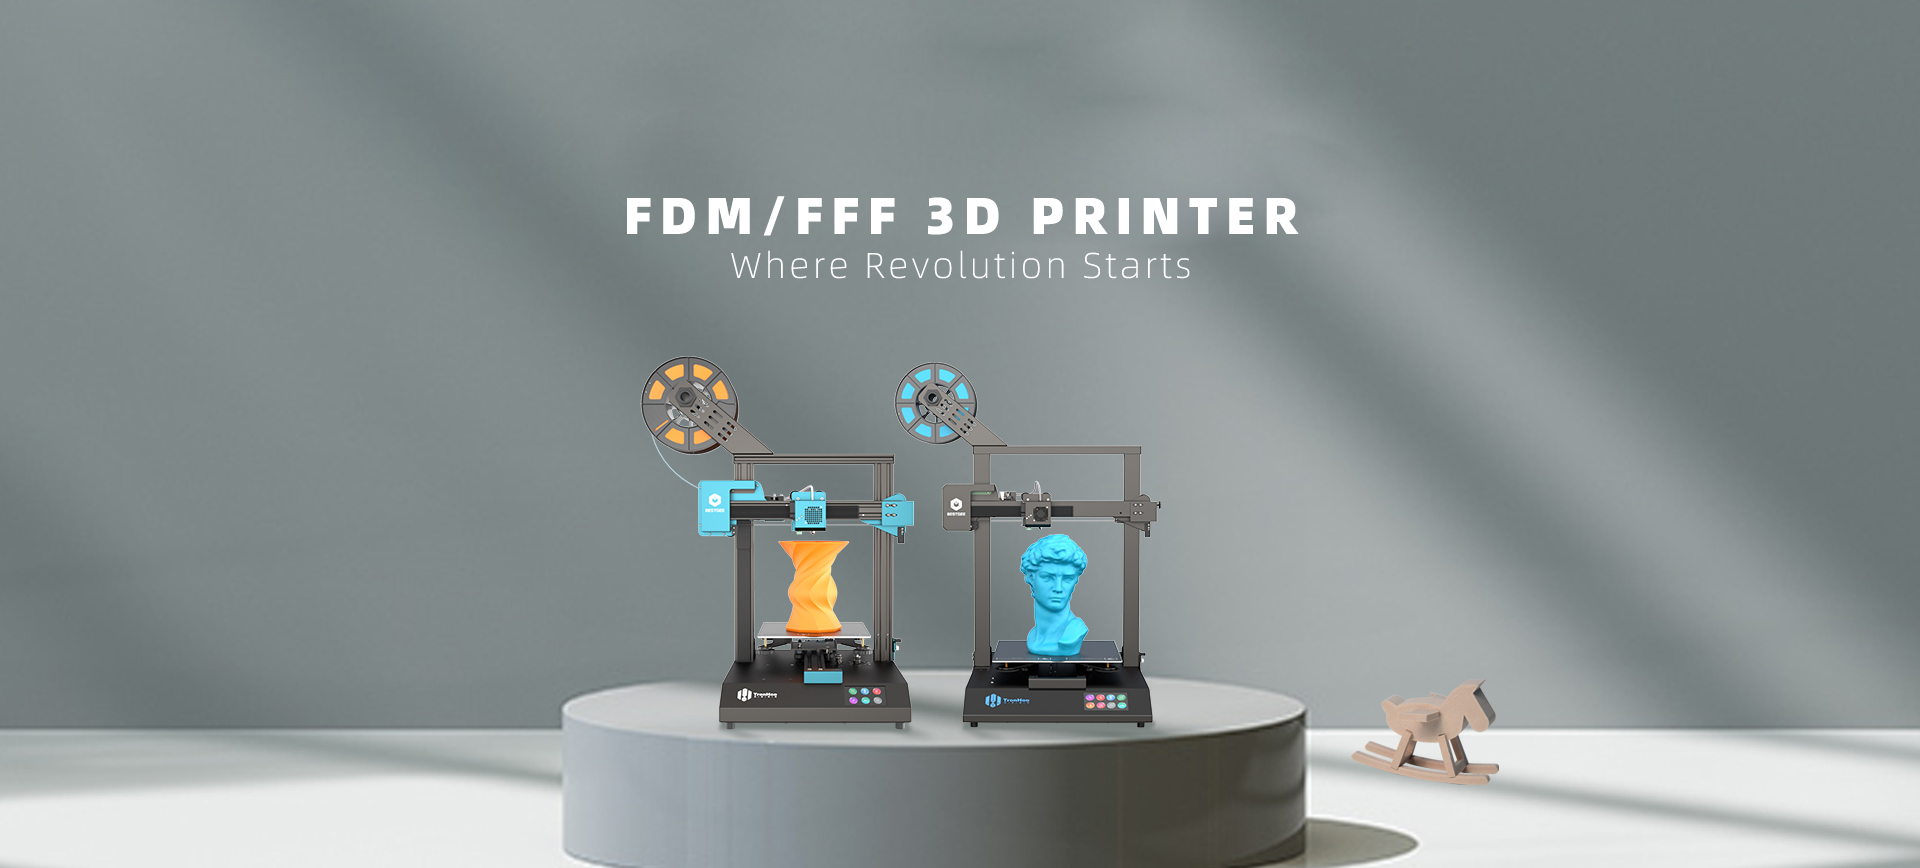 FDM/FFF 3D Printers